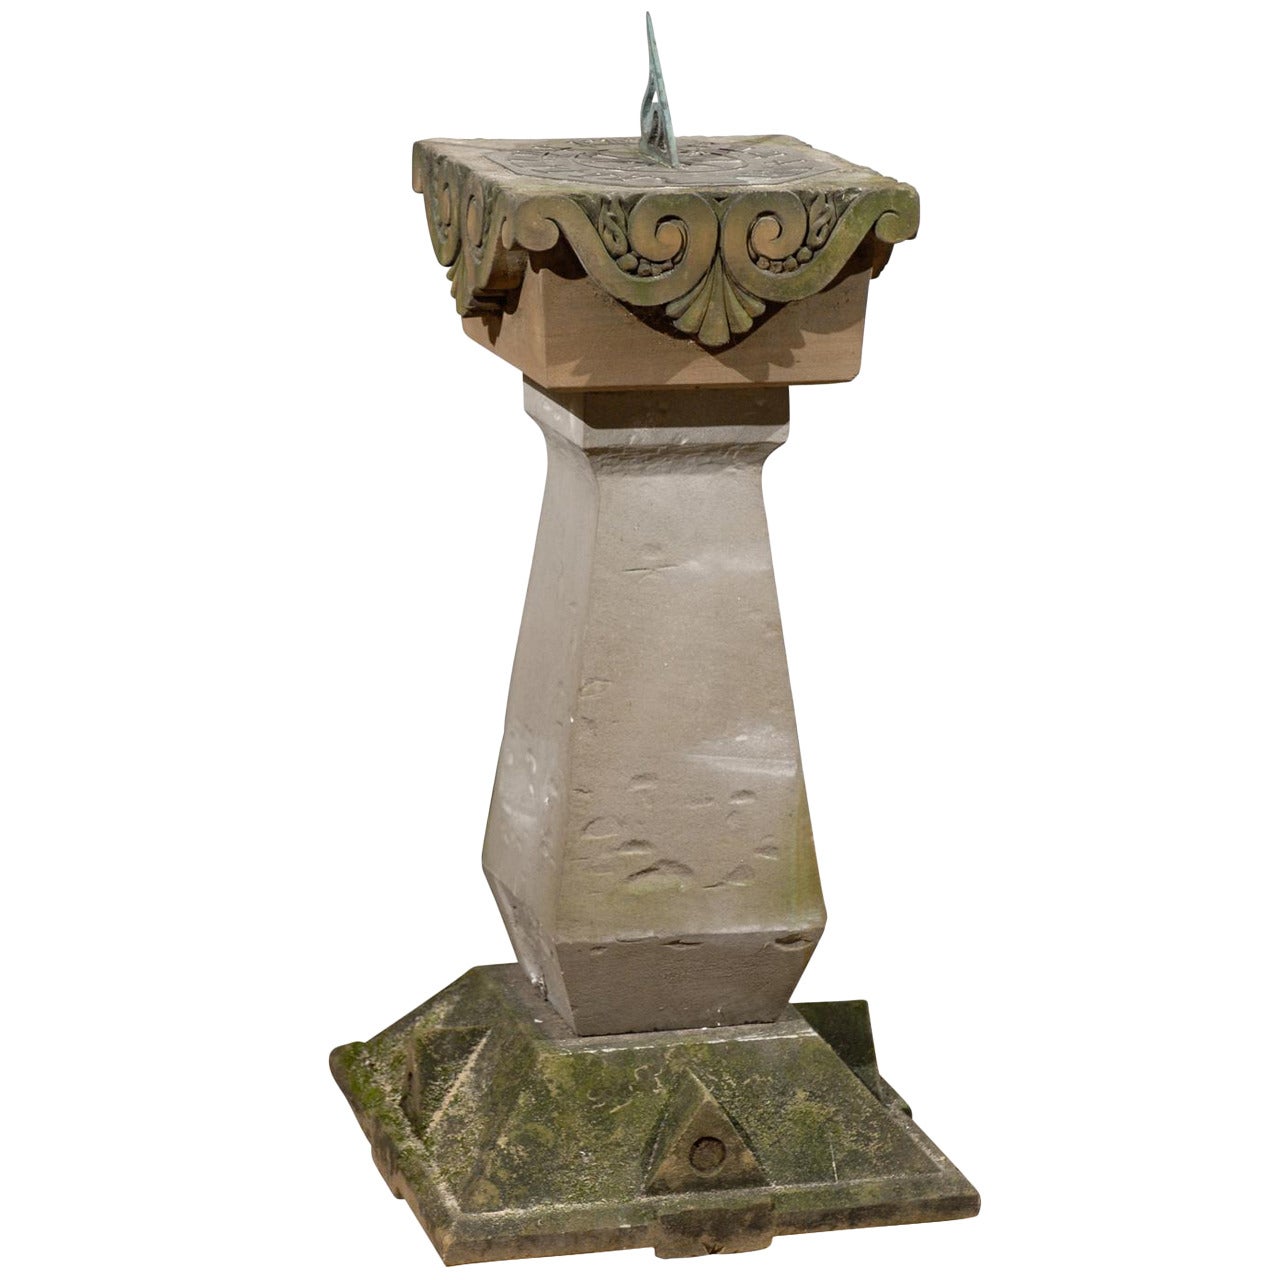 Sundial anglais de la fin du 19e siècle avec plateau en pierre calcaire sculptée et bronze